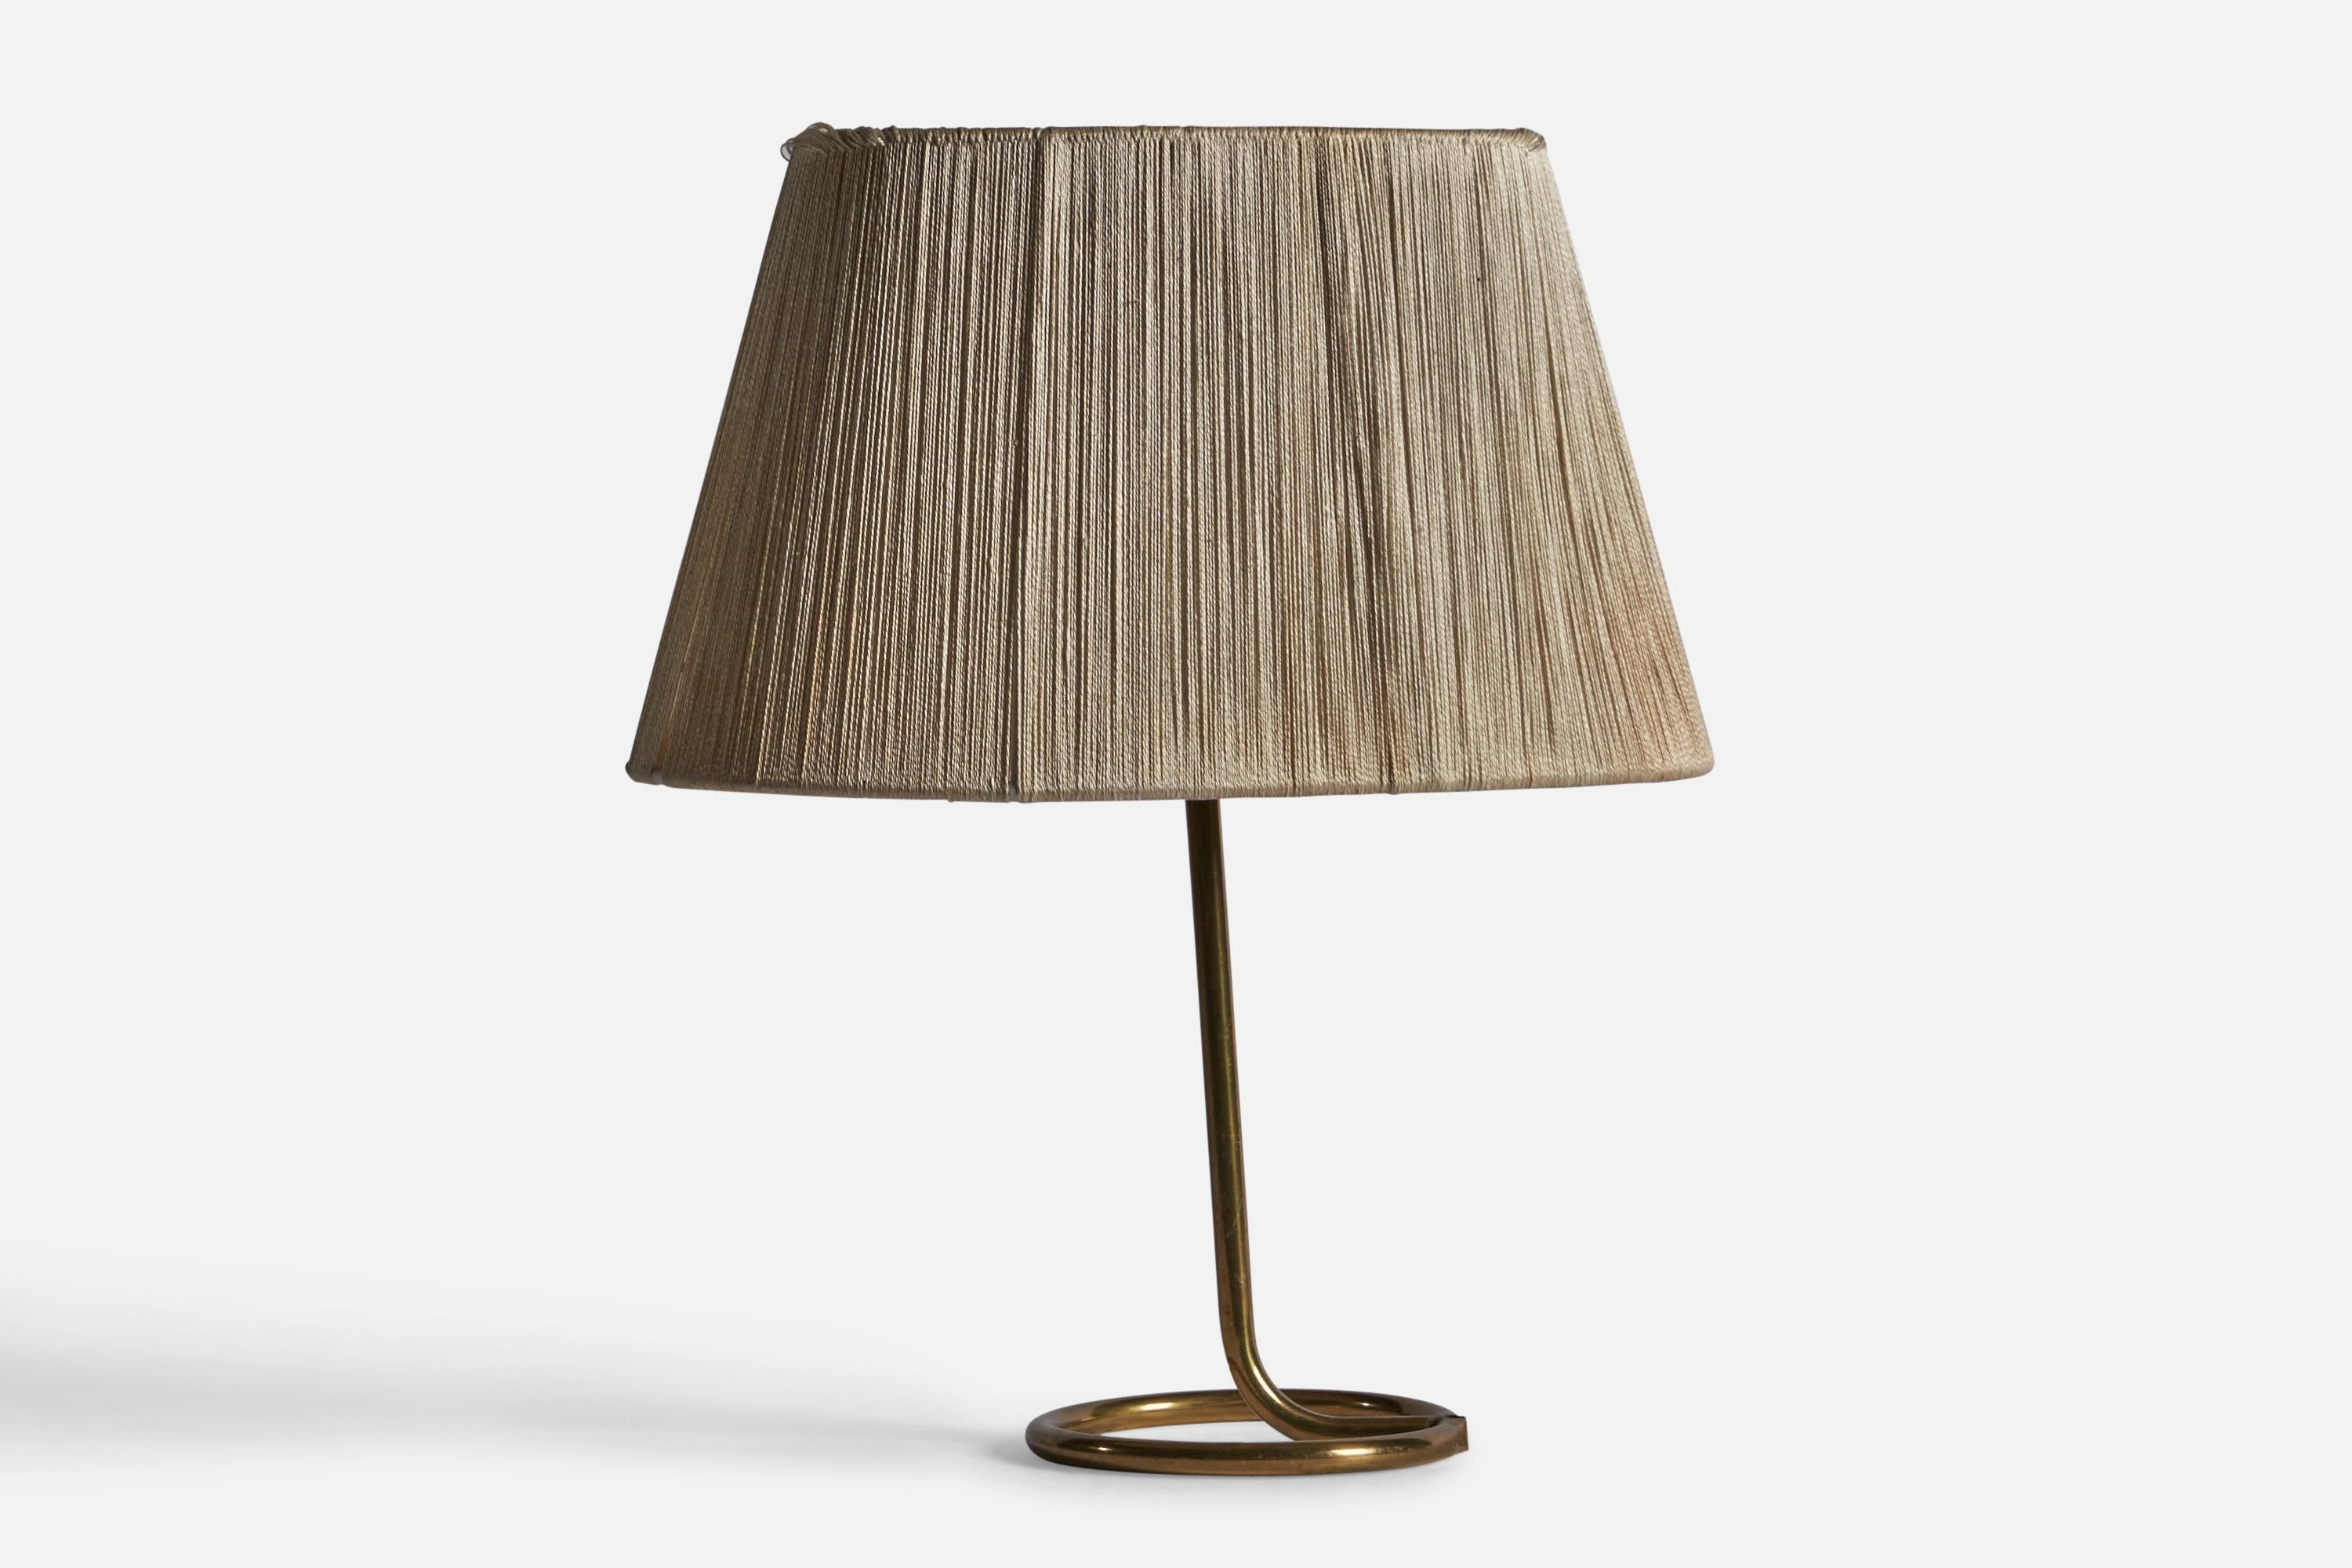 Lampe de table en laiton et tissu, conçue et produite en Suède, vers les années 1950.

Dimensions totales : 14.4